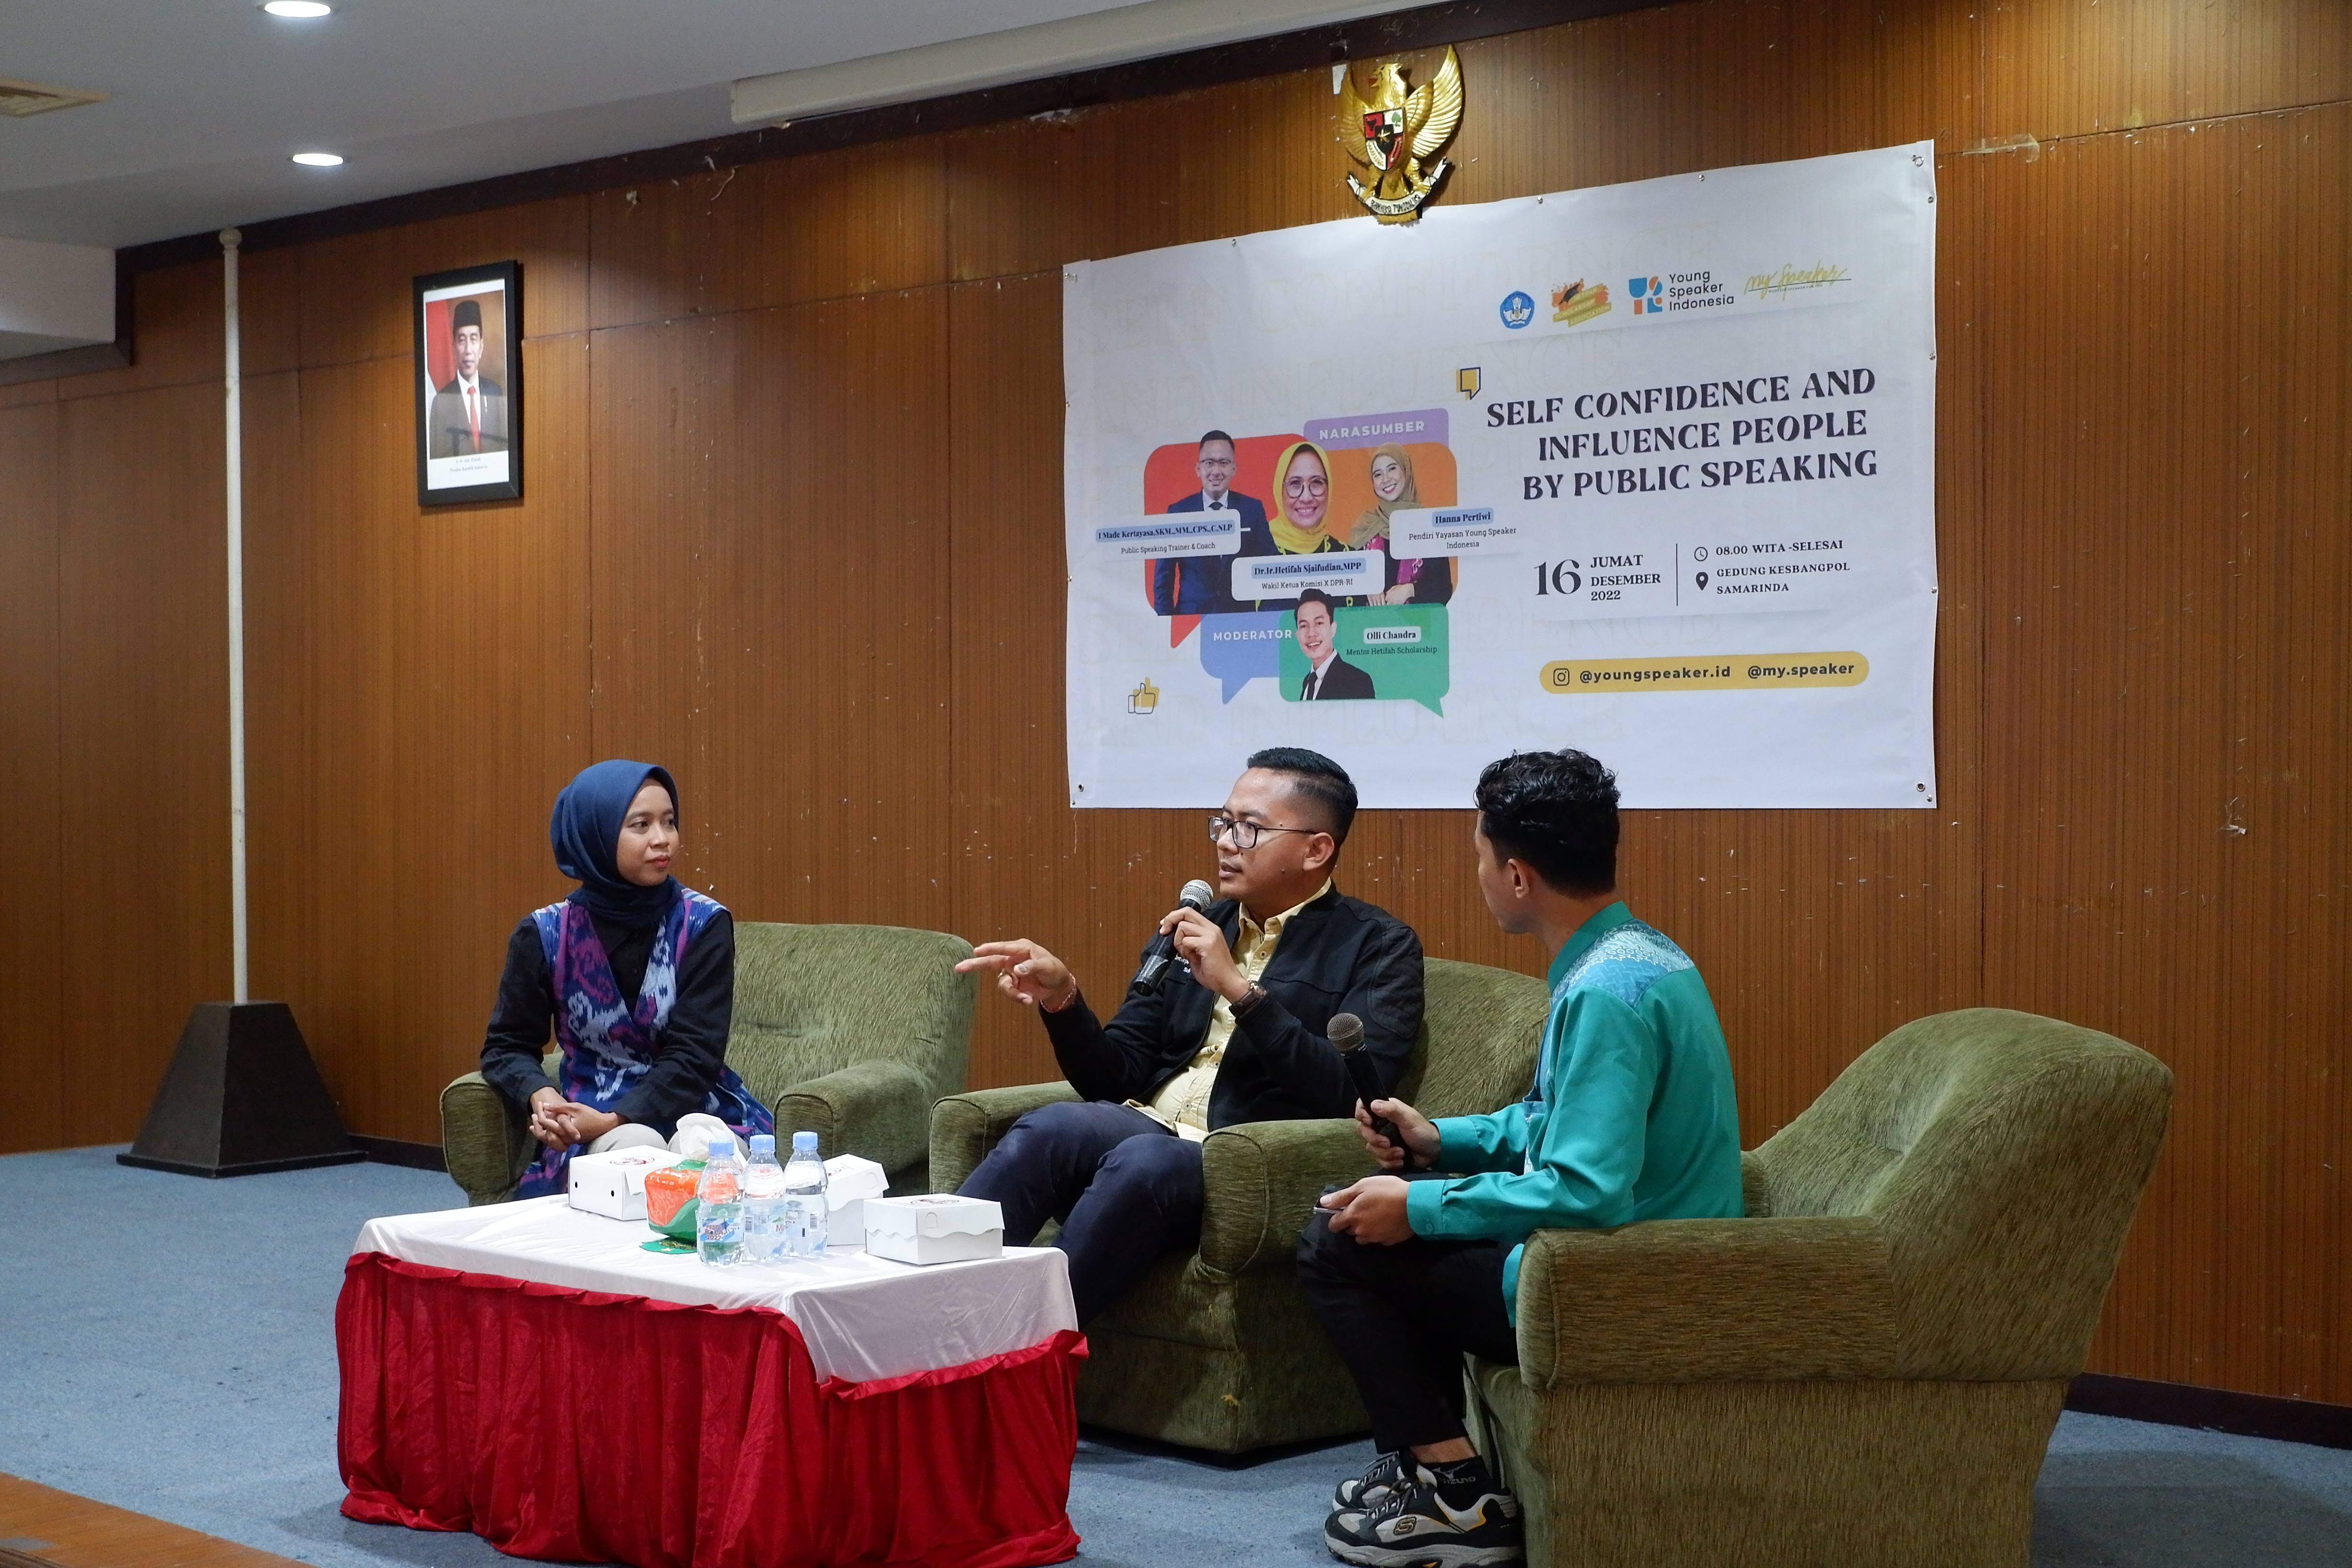 Bangun Kepercayaan Diri Anak Muda Tampil Bicara, Yayasan Young Speaker Indonesia Gelar Talk Show Public Speaking